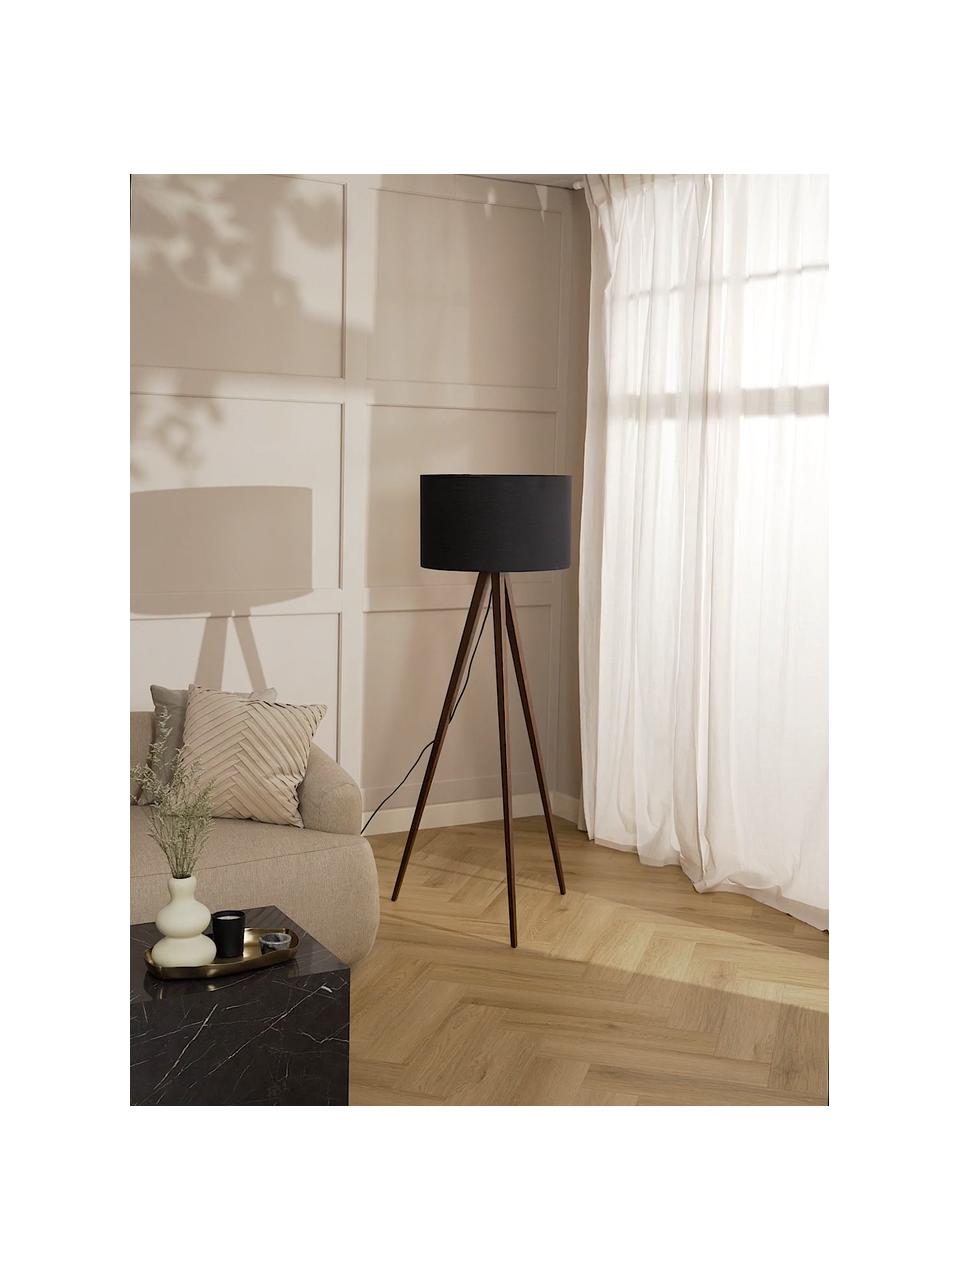 Lampa podłogowa trójnóg z litego drewna w stylu scandi Jake, Czarny, brązowy, W 150 cm